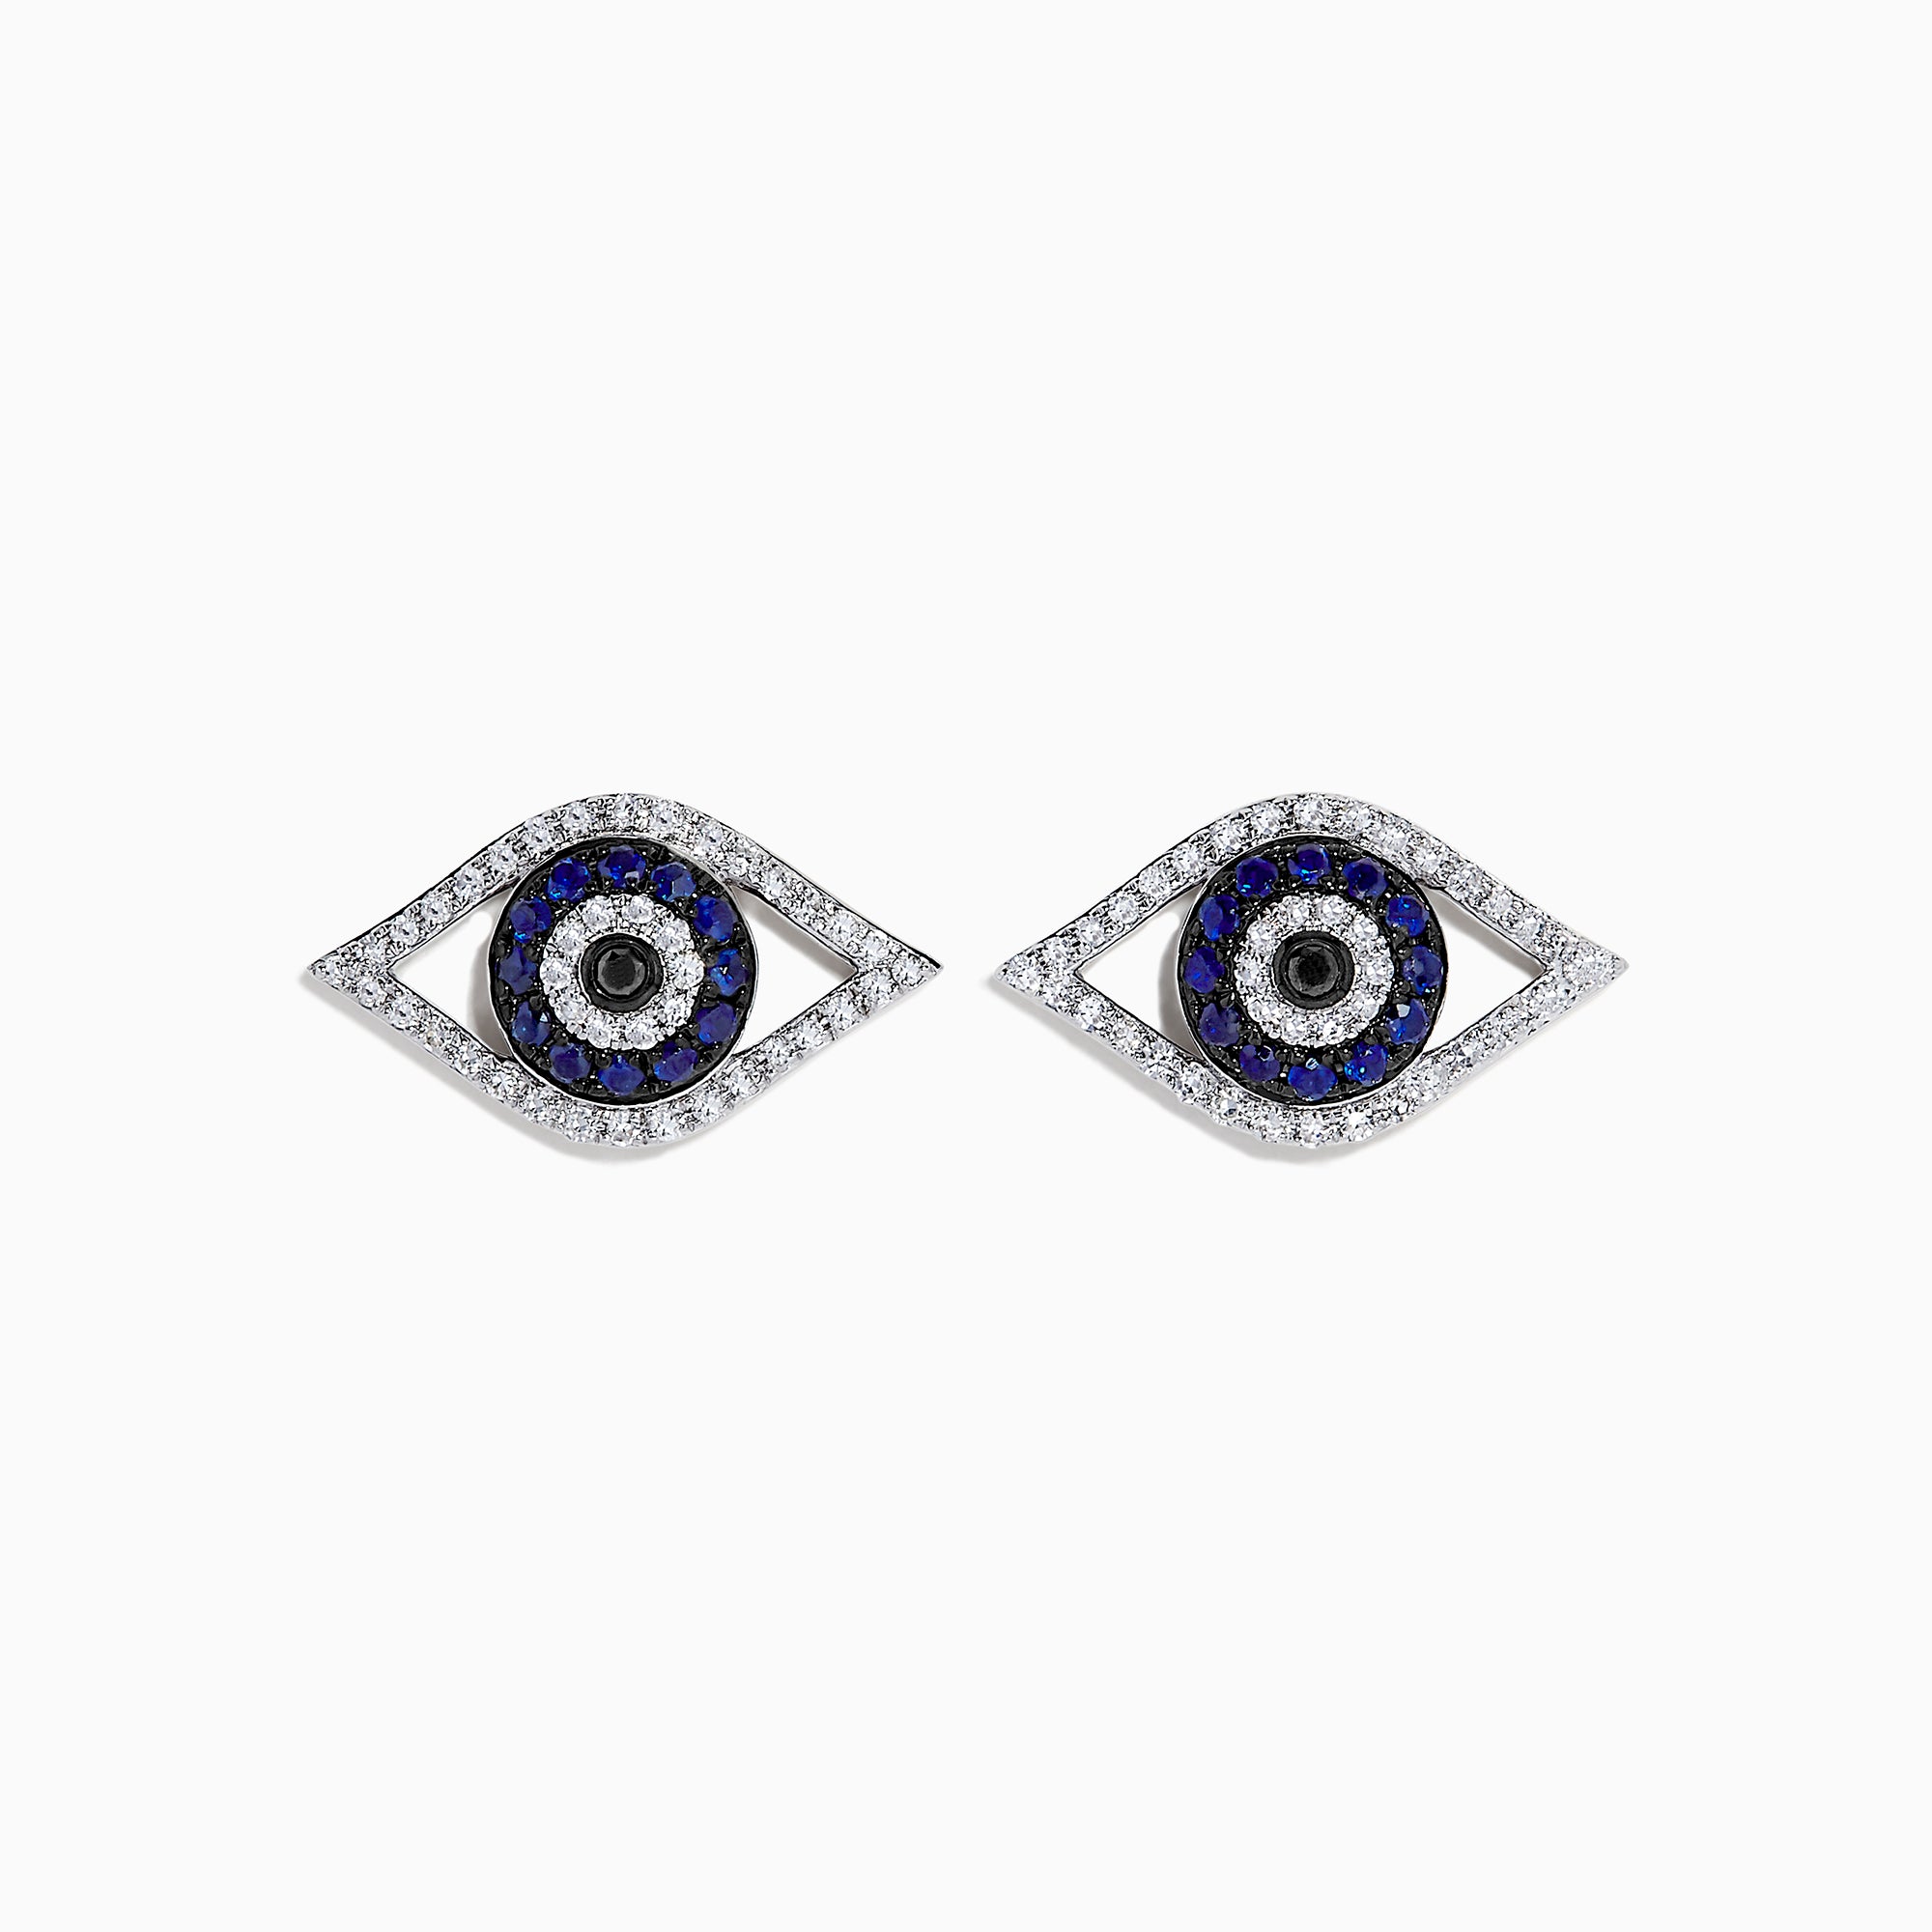 Effy Novelty 14K White Gold Sapphire & Diamond Evil Eye Earrings, 0.57 TCW